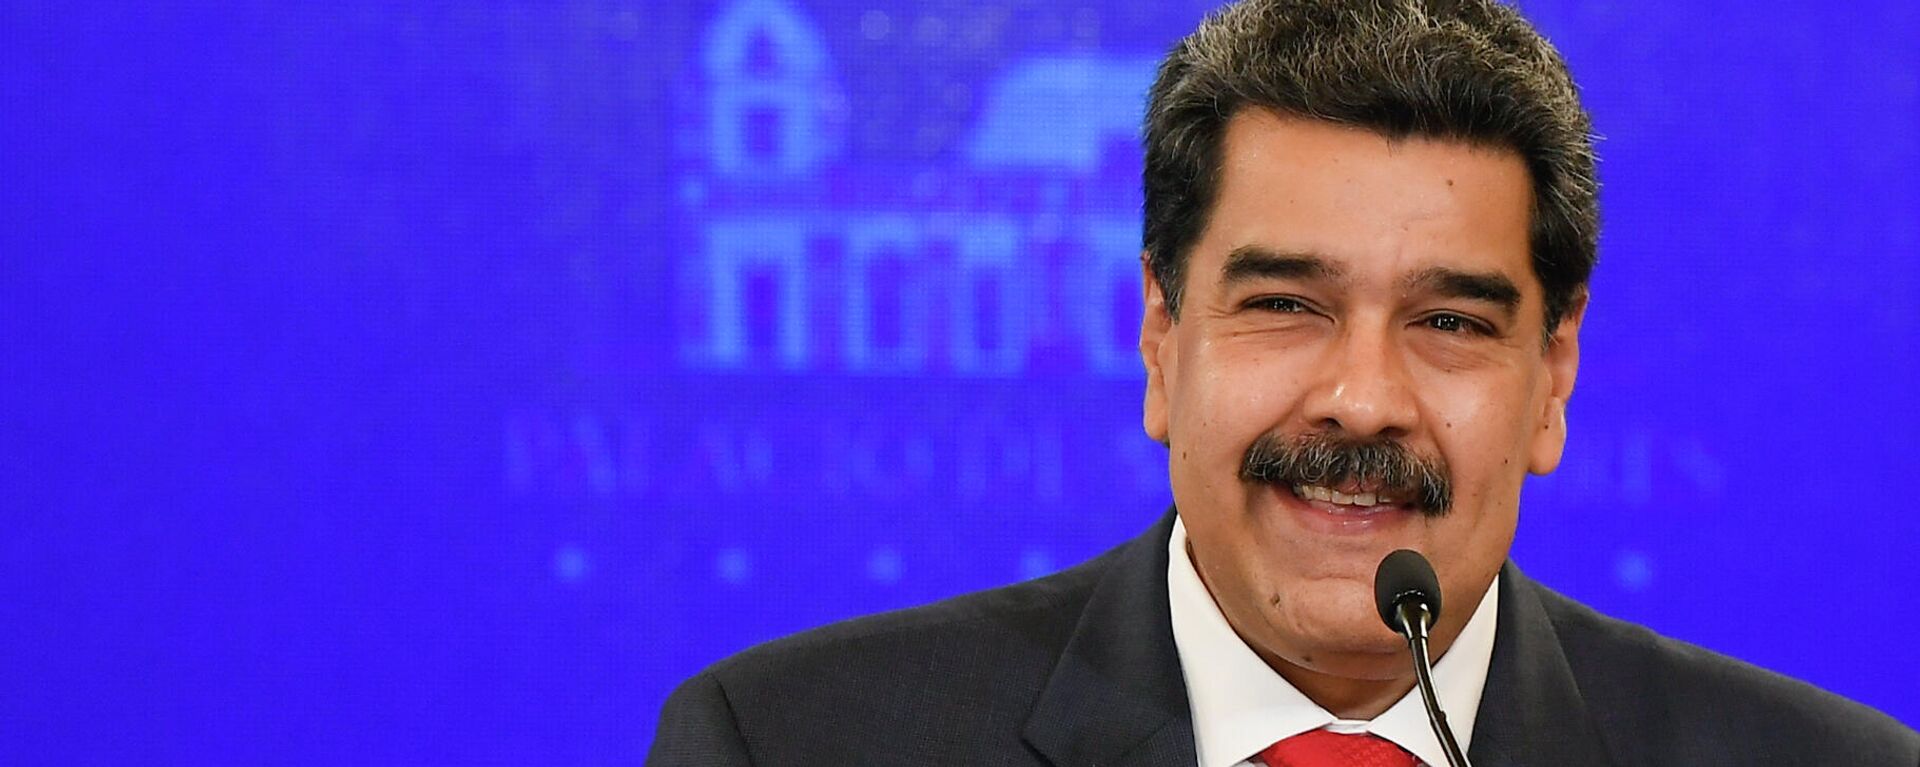 Nicolás Maduro, presidente de Venezuela - Sputnik Mundo, 1920, 31.08.2021